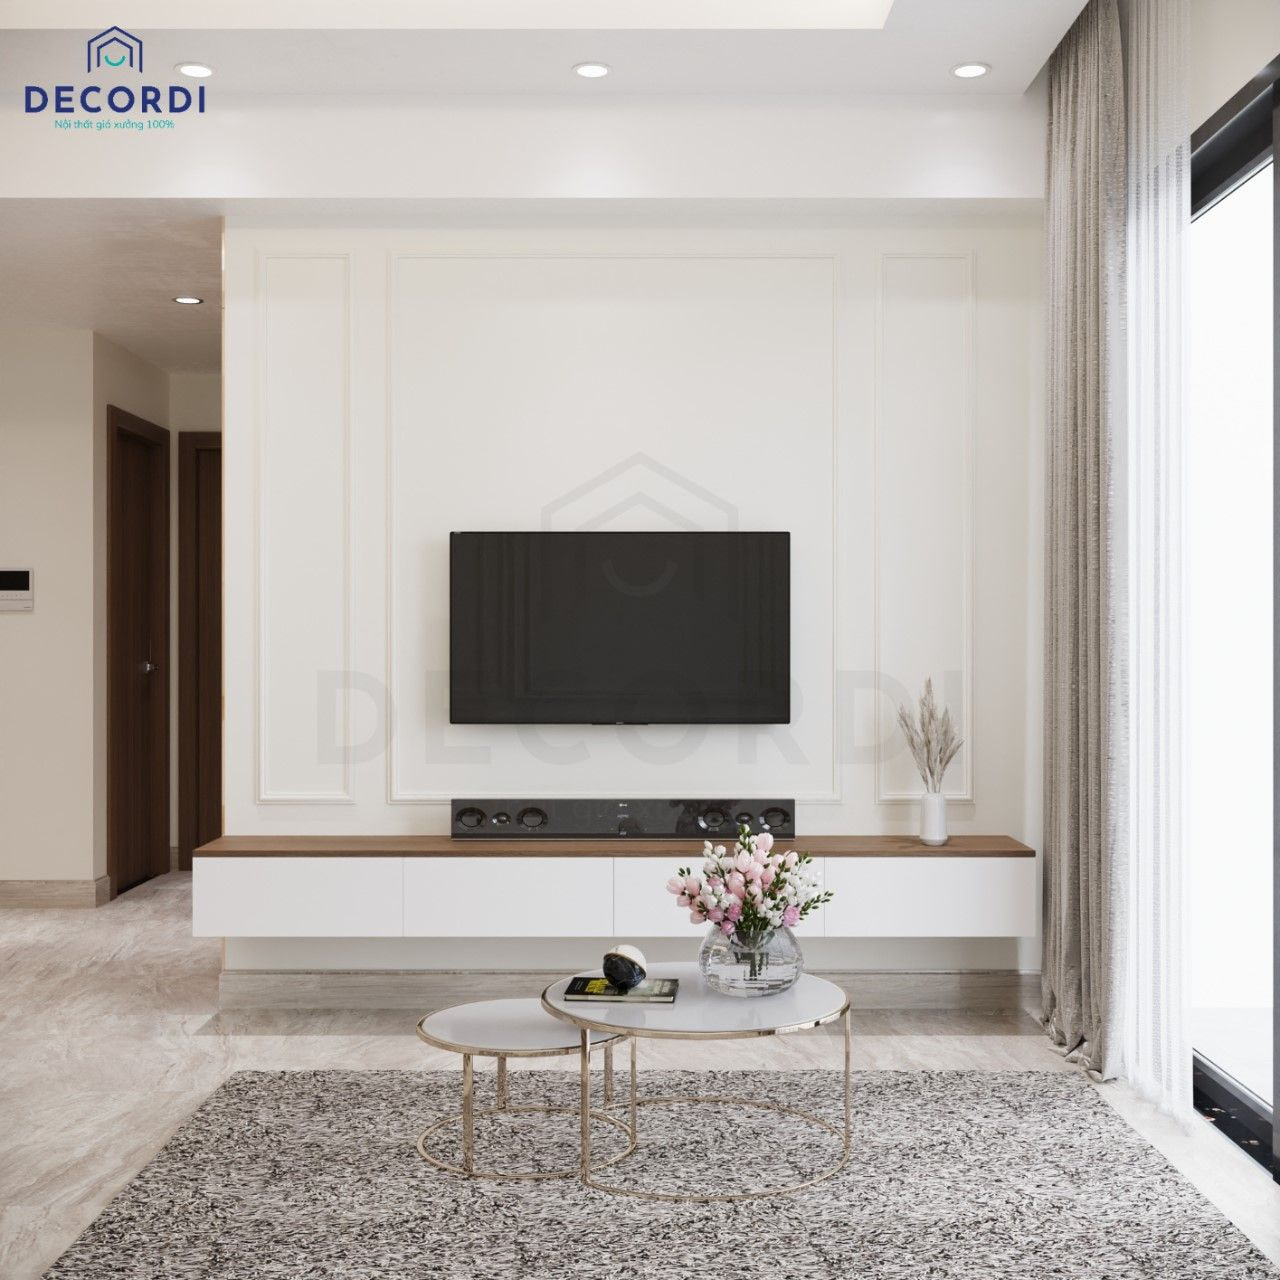 Thiết kế nội thất chung cư luxury gam màu trắng với vách tivi phối phào chỉ sang trọng